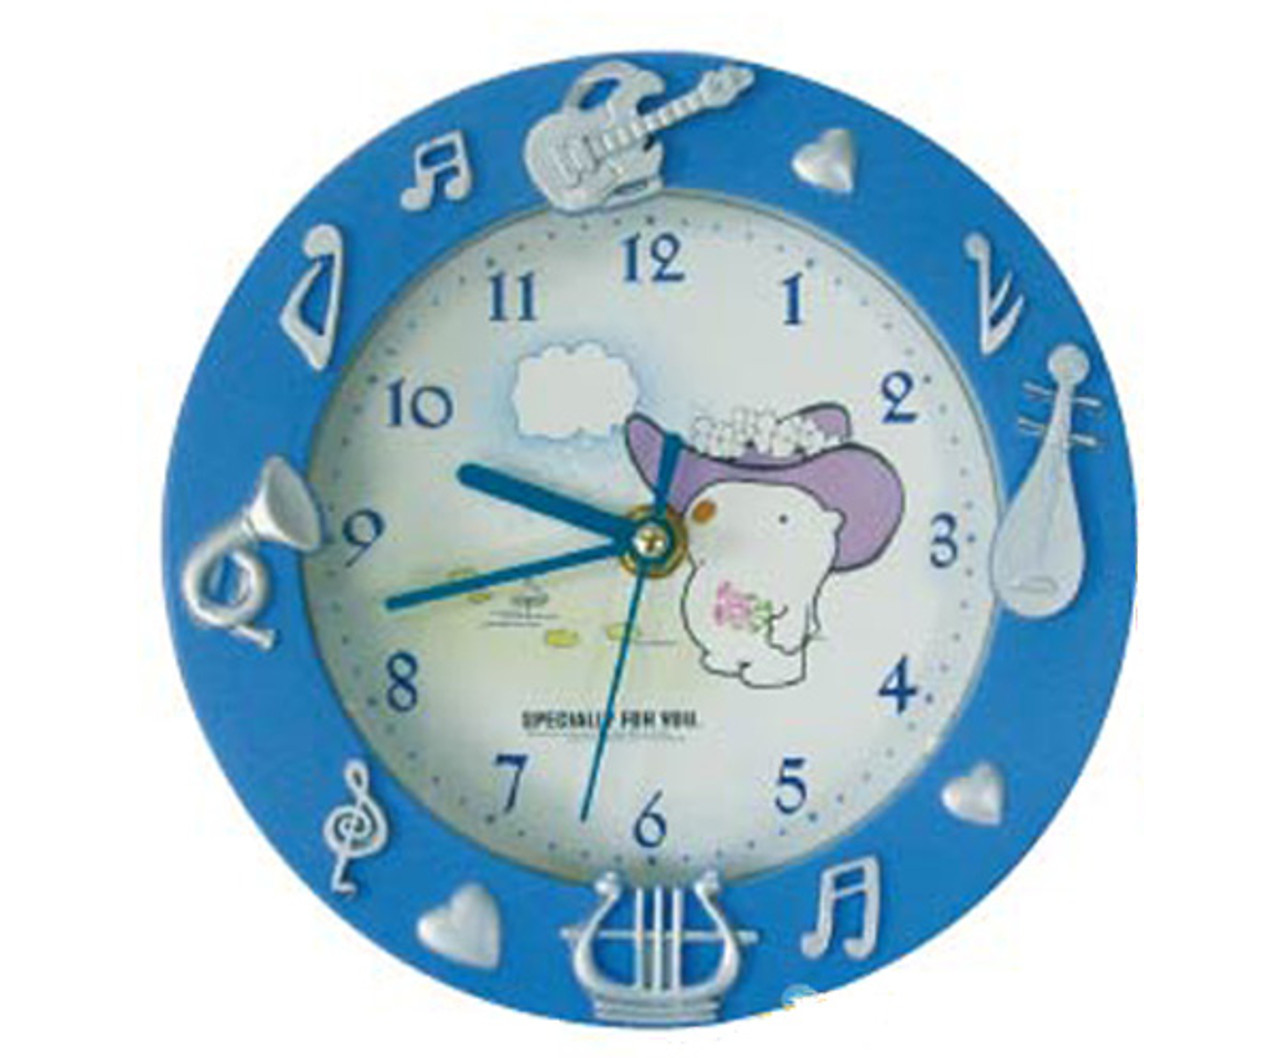 Alarm Clock - Instruments Blue